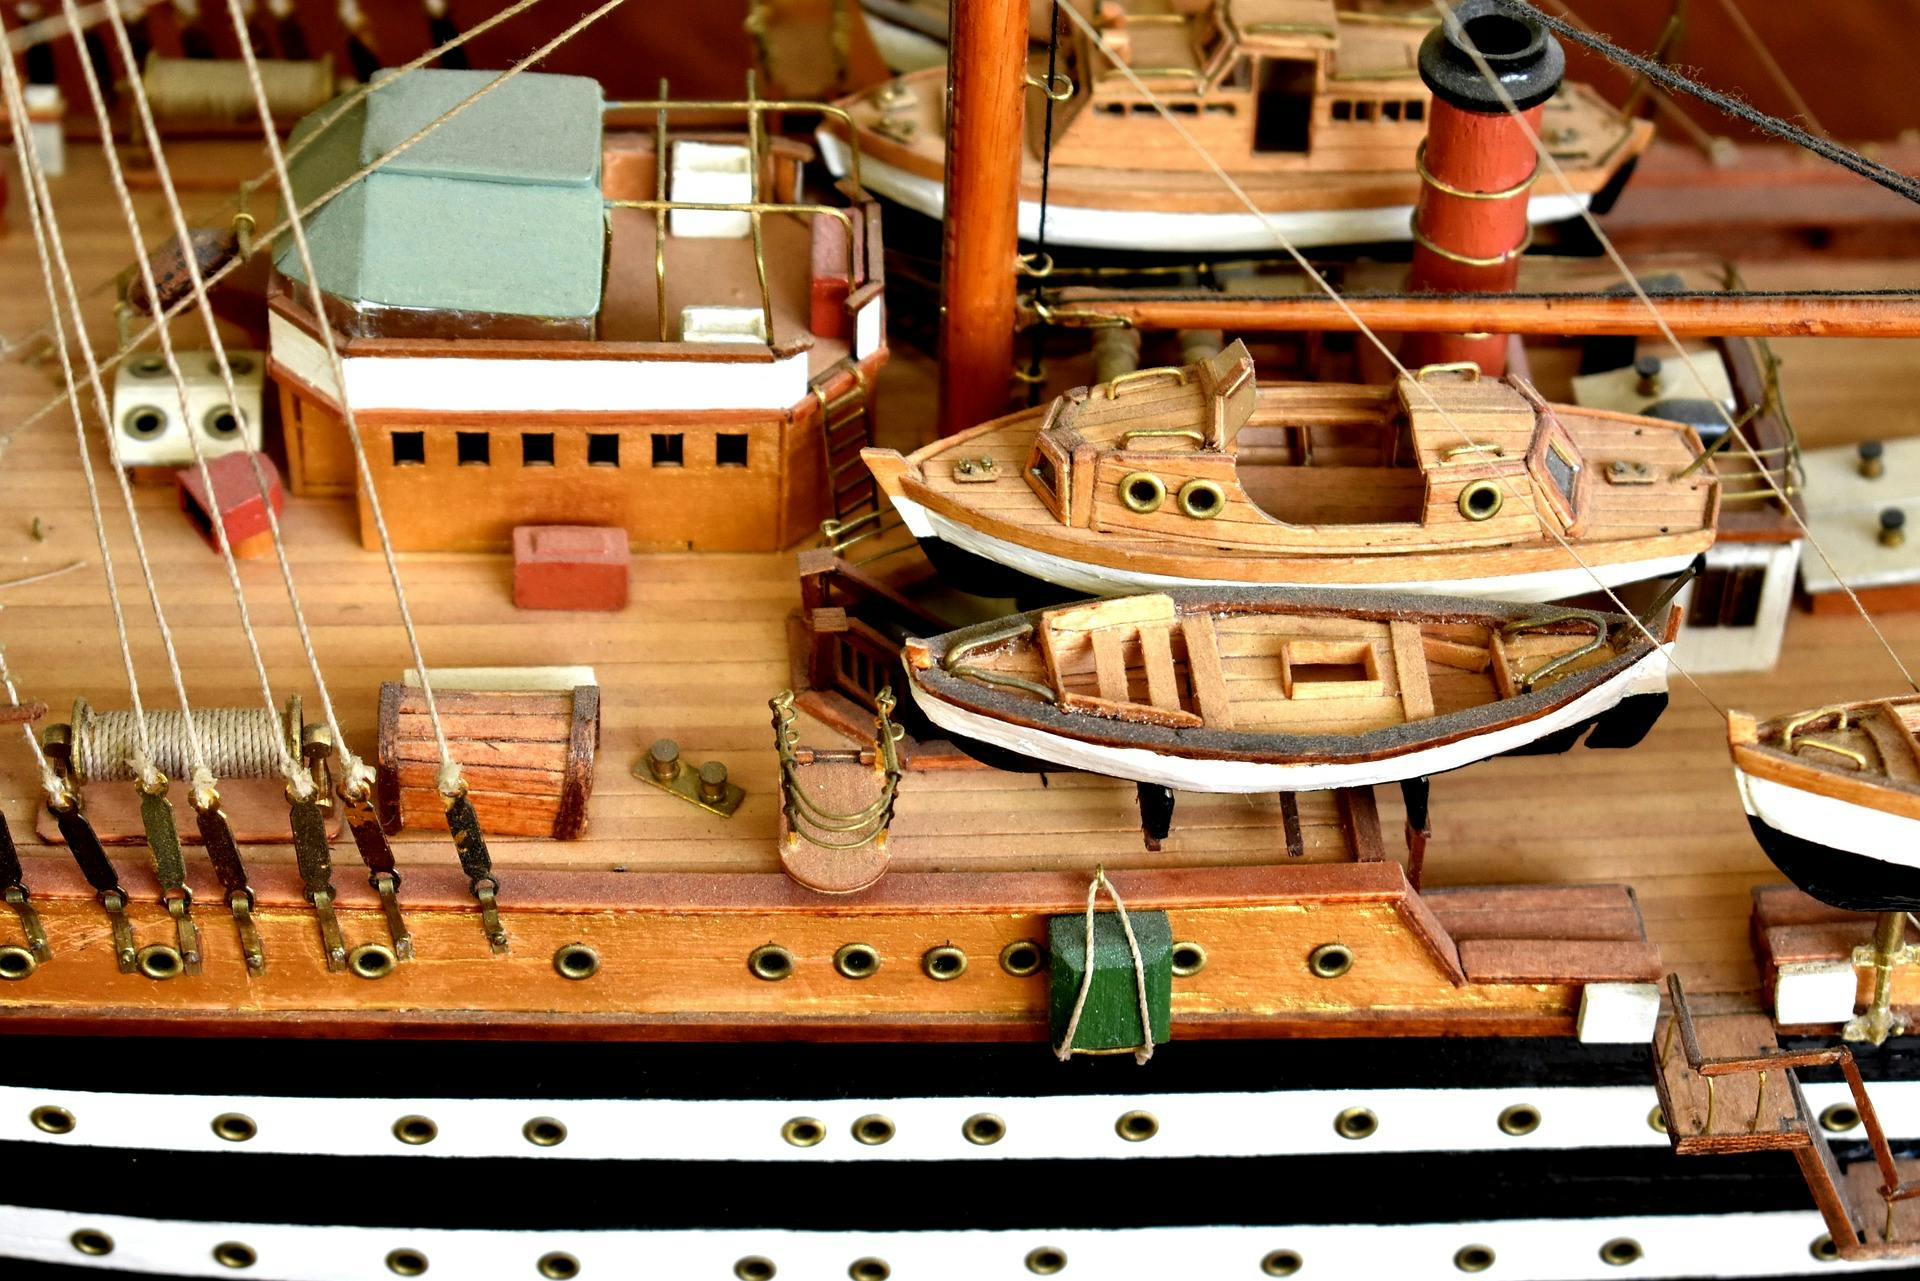 Наша мировая модель была построена. Модель парусника Америго Веспуччи. Модели кораблей судомоделирование. Судомоделирование парусных кораблей. Модель корабля парусник судомоделирование.